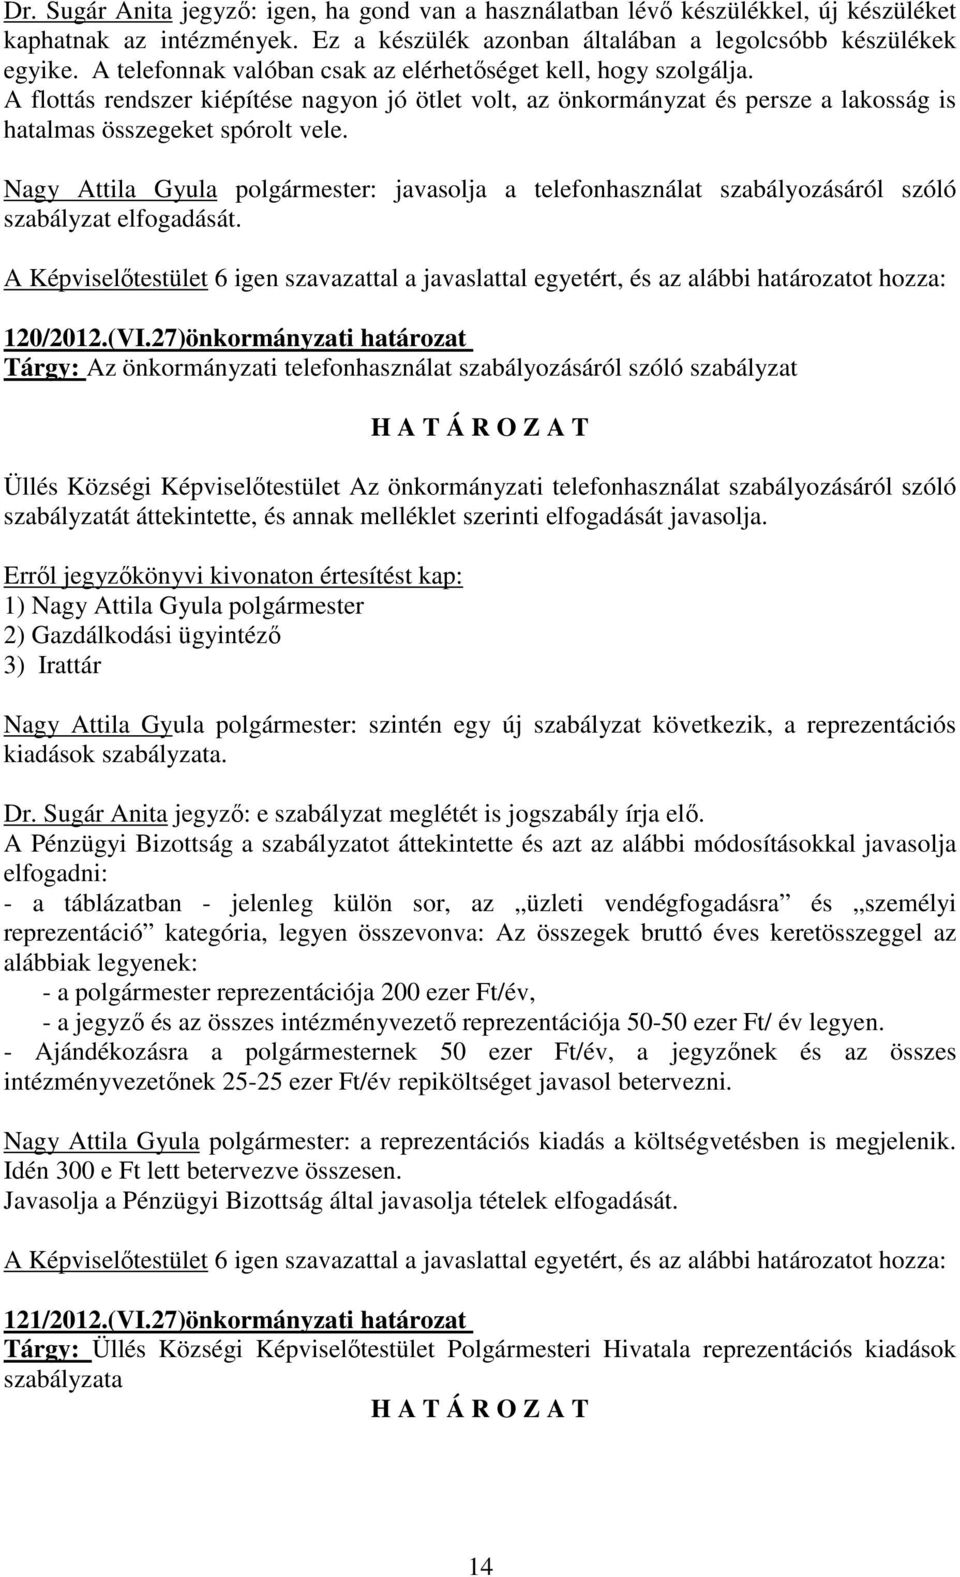 Nagy Attila Gyula polgármester: javasolja a telefonhasználat szabályozásáról szóló szabályzat elfogadását. 120/2012.(VI.